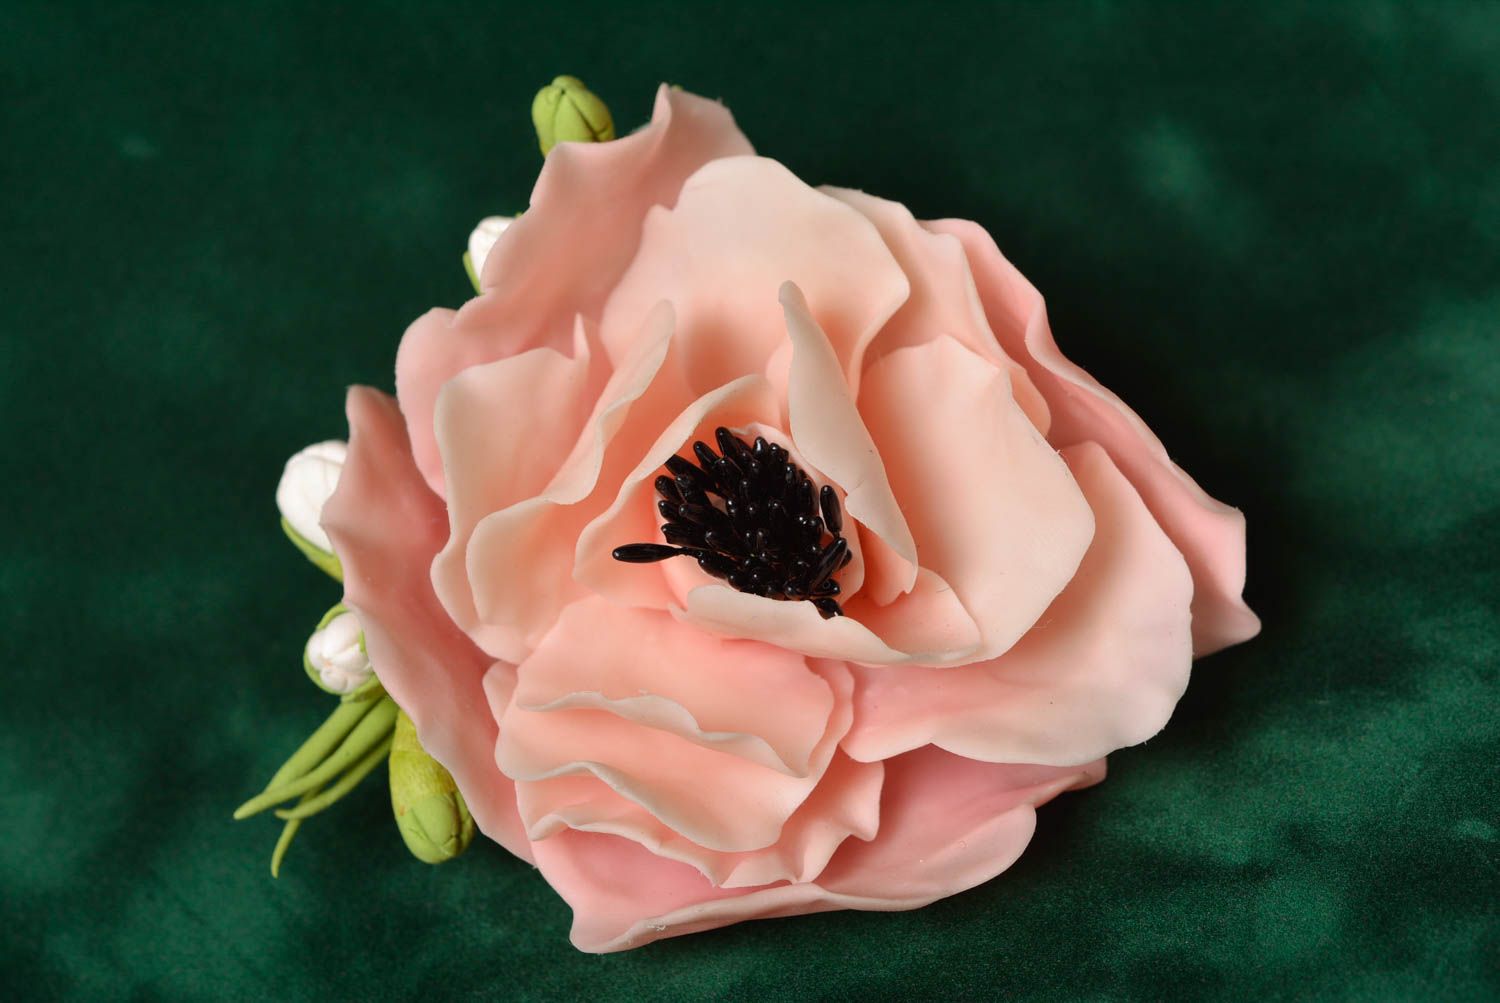 Брошь из холодного фарфора цветочная авторская ручной работы с розовым маком фото 1